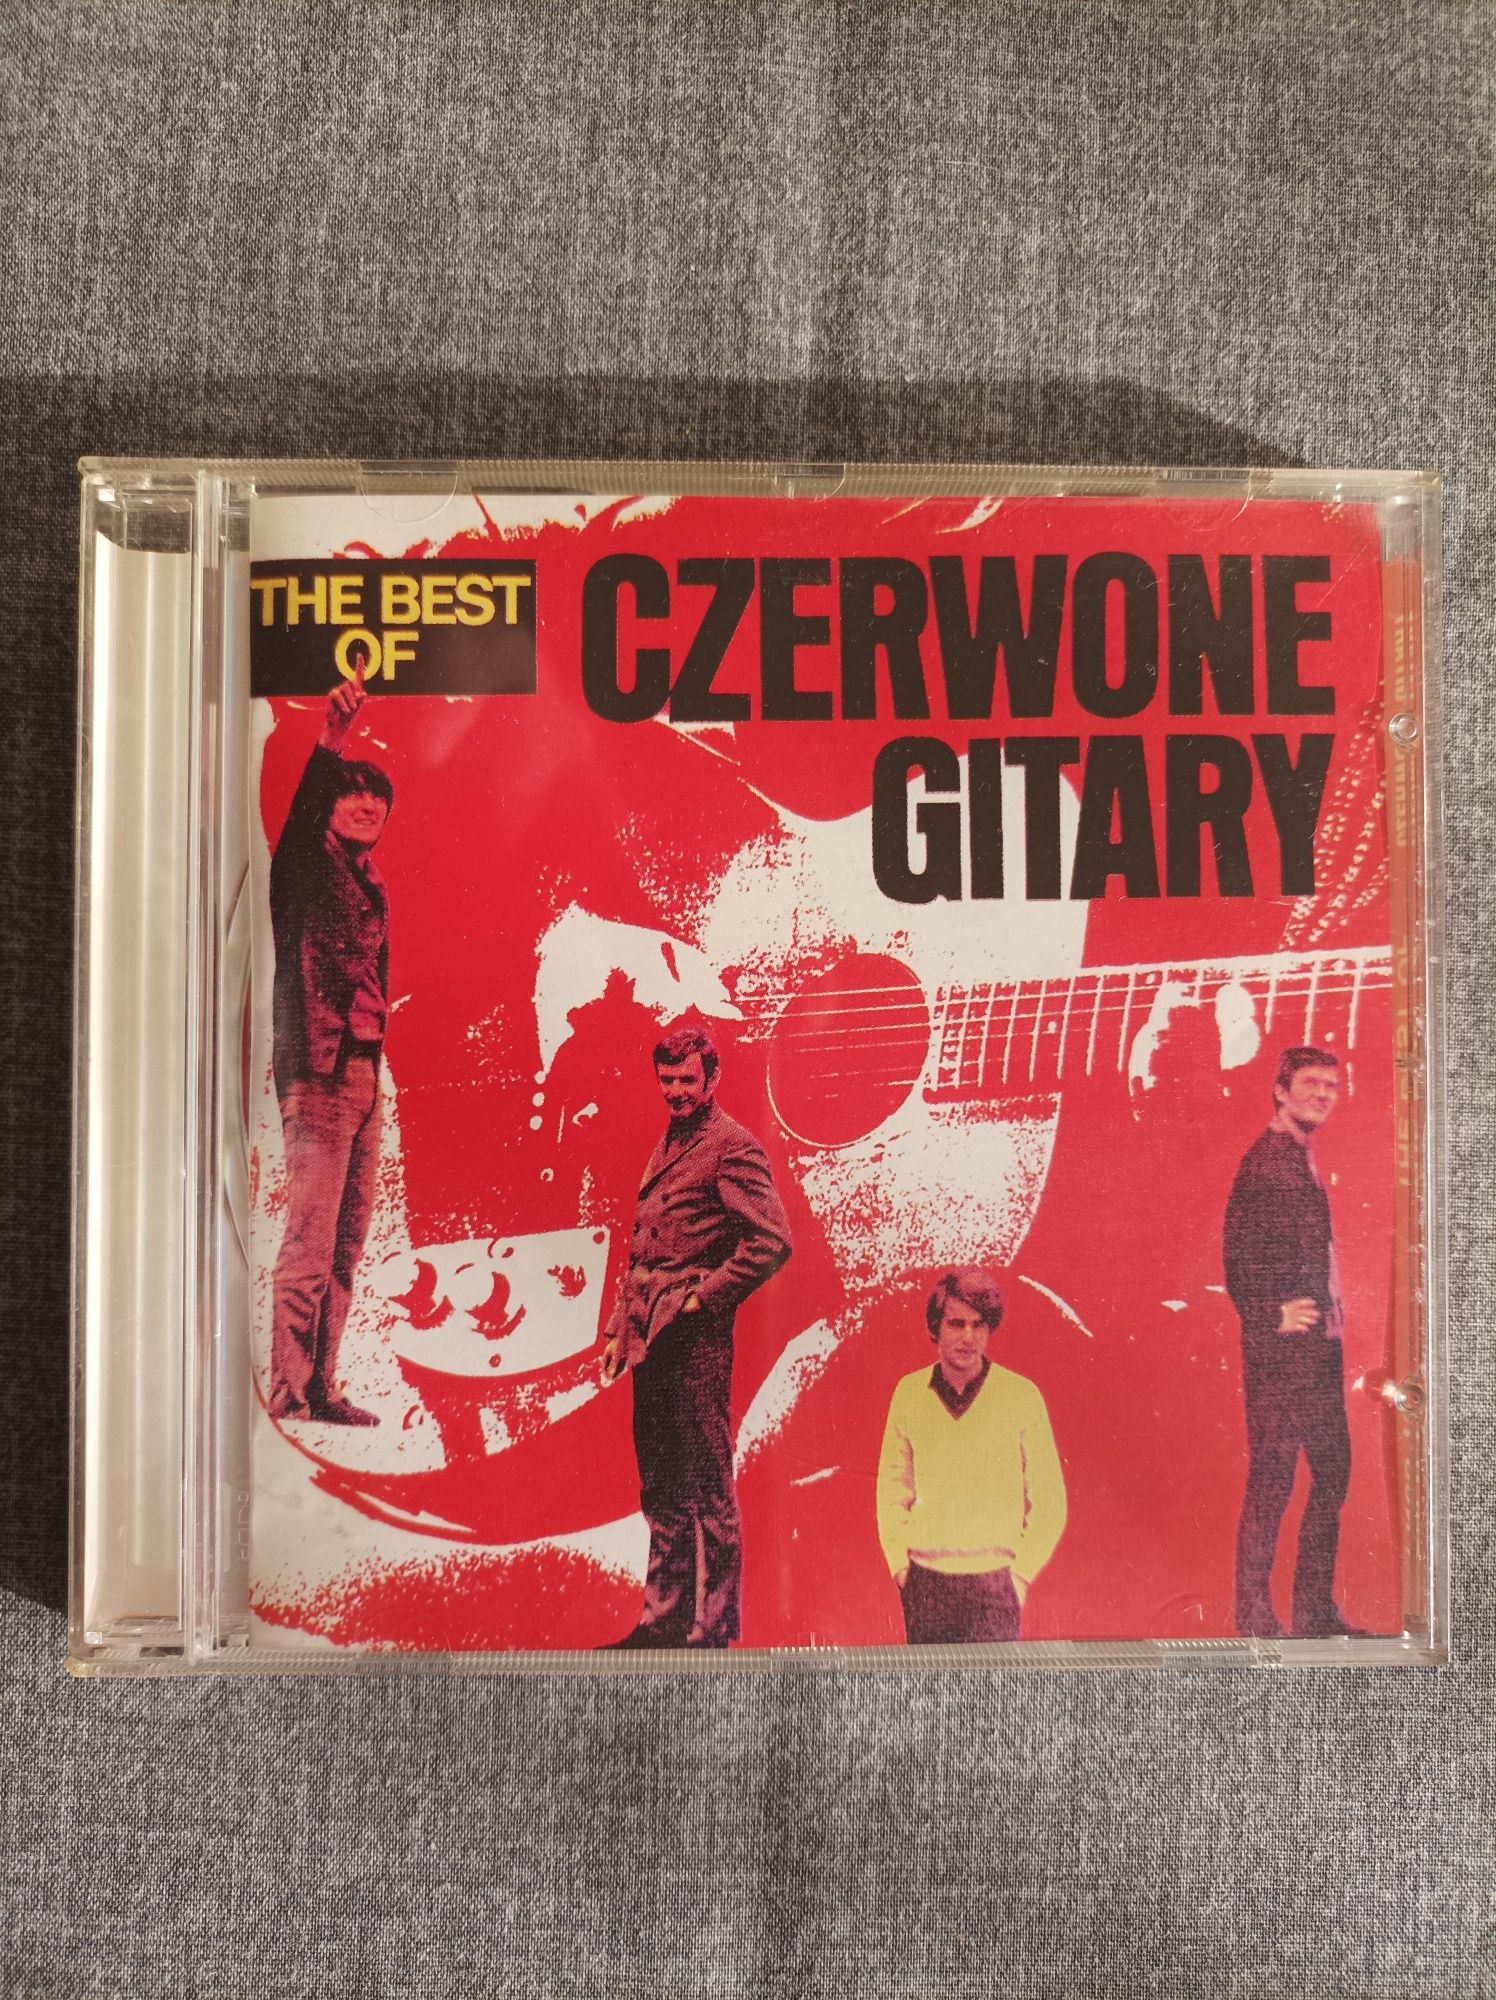 3 - Czerwone Gitary - THE BEST OF - 1 x CD